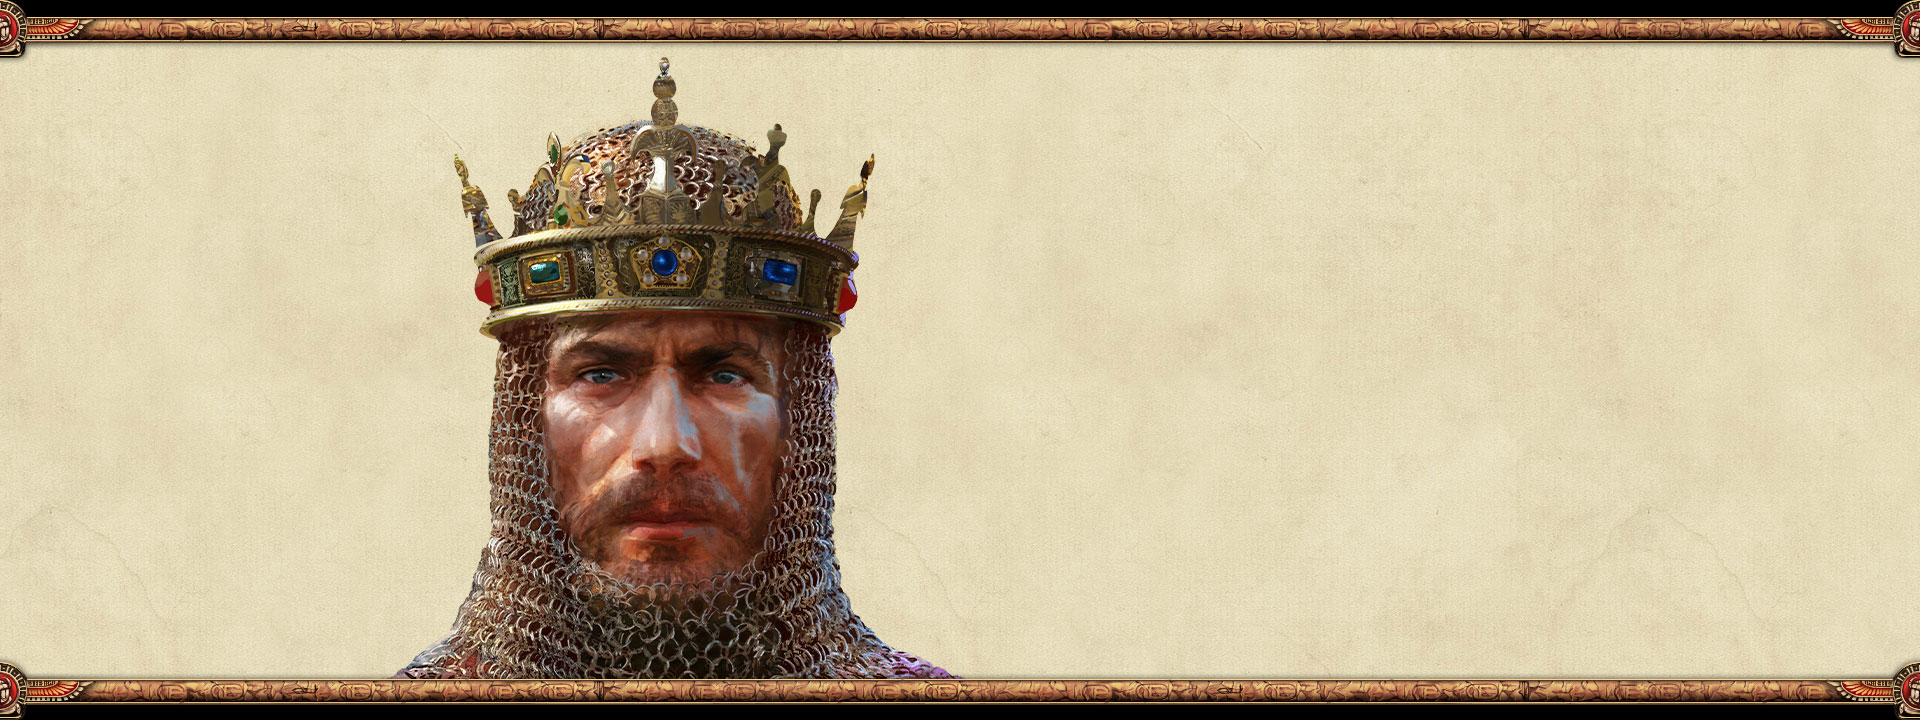 帝國的統治者穿著鎖子甲並戴著王冠